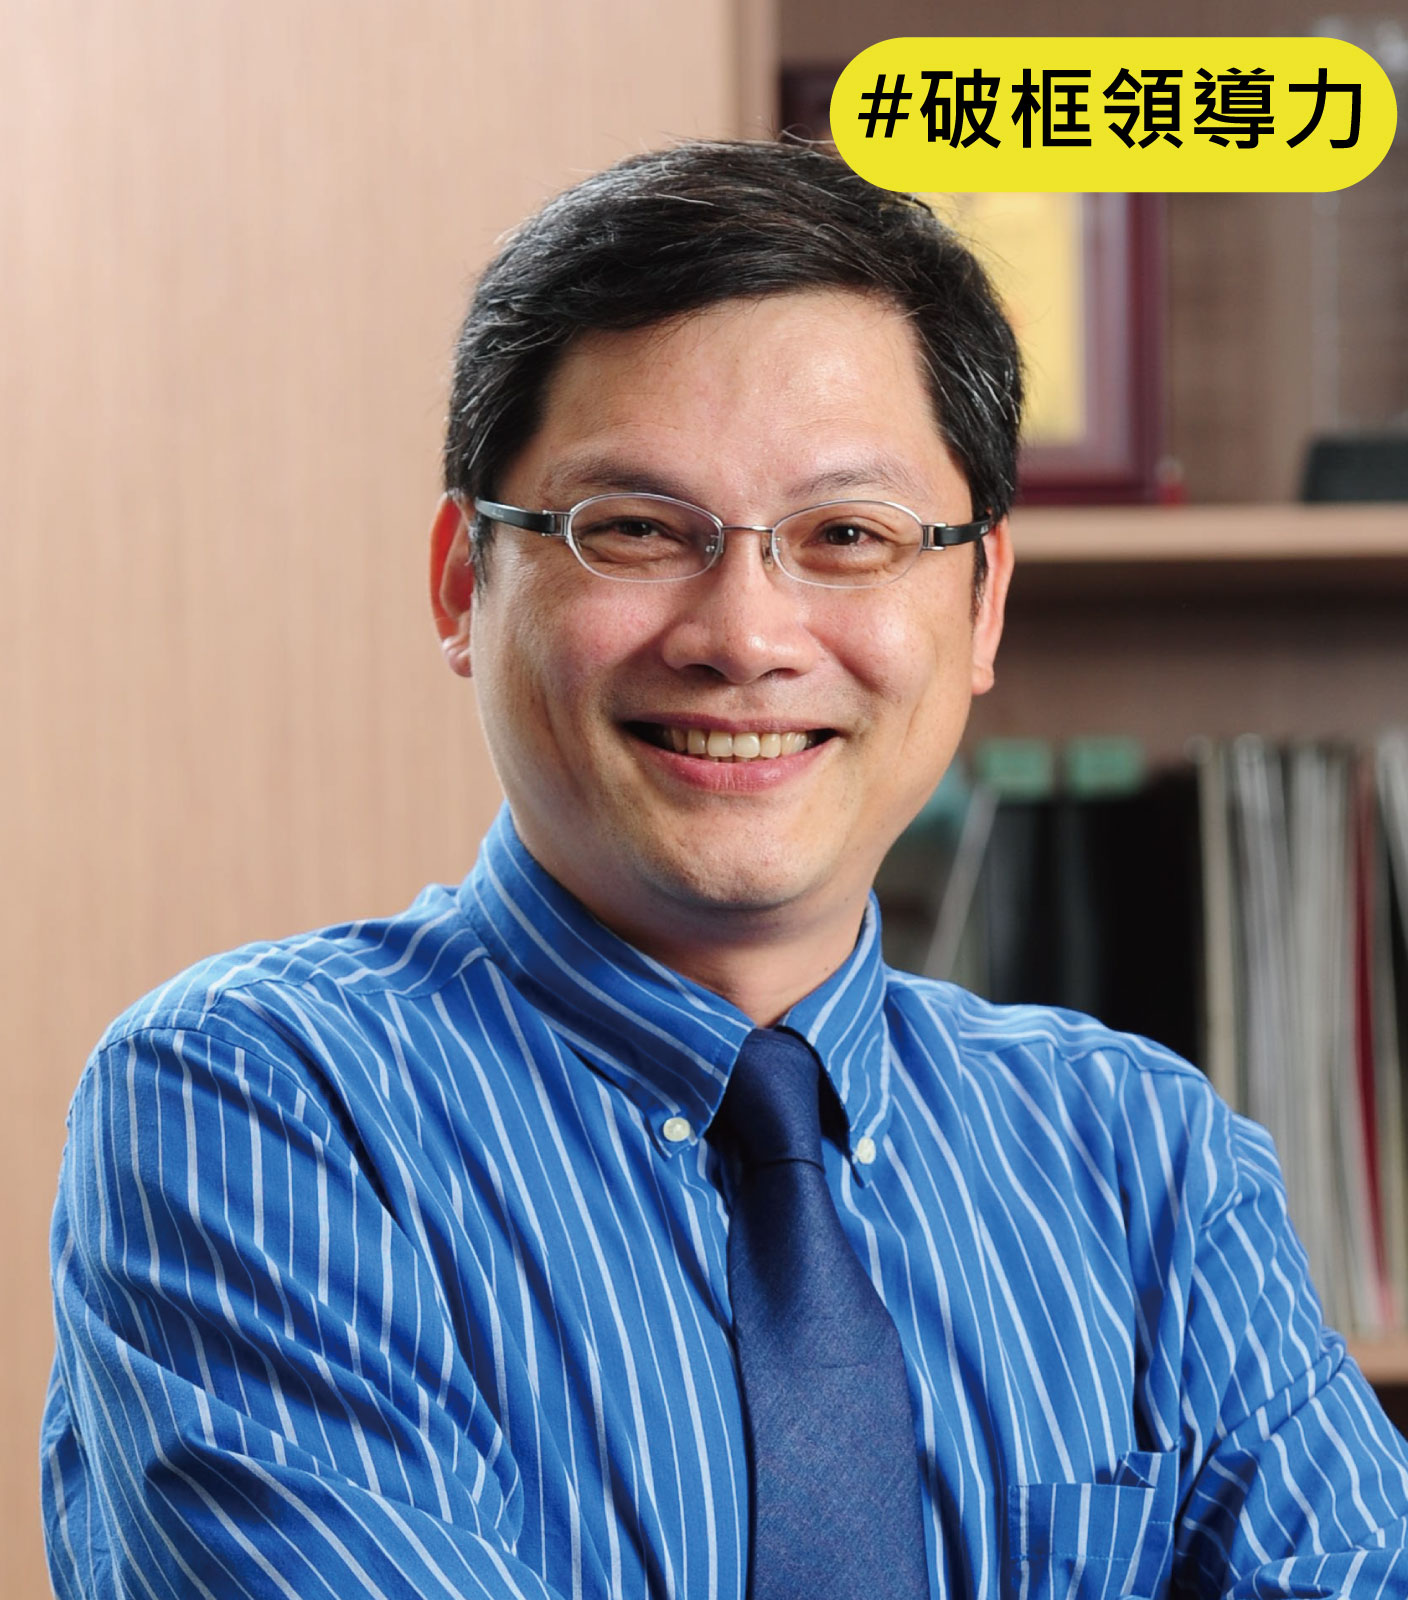 臺灣科技大學資訊管理系專任特聘教授盧希鵬個人照